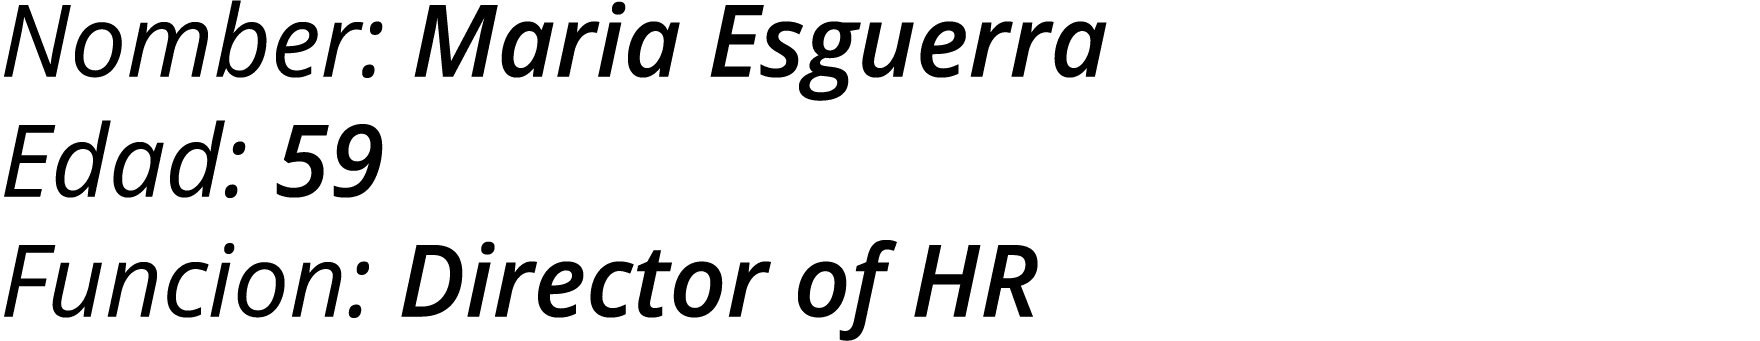 Nomber: Maria Esguerra Edad: 59 Funcion: Director of HR